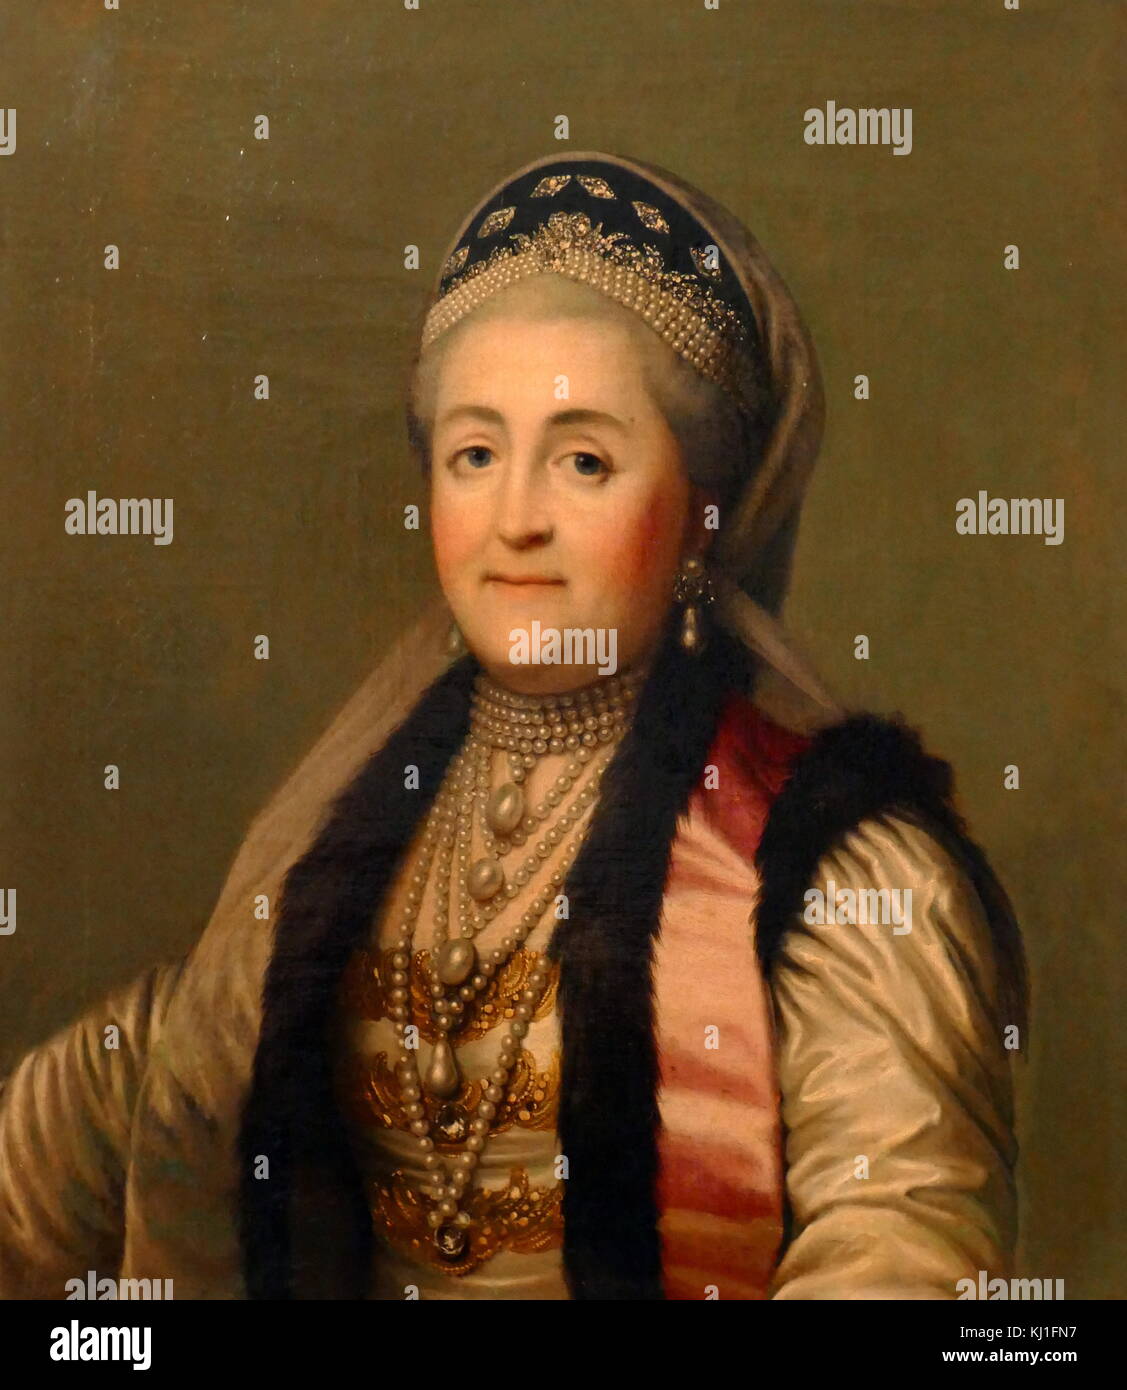 Caterina II di Russia (noto come Caterina la Grande). (1729 -1796), più lunga-pregiudiziale leader femminile della Russia, che regna dal 1762 fino alla sua morte nel 1796 all'età di 67 Foto Stock